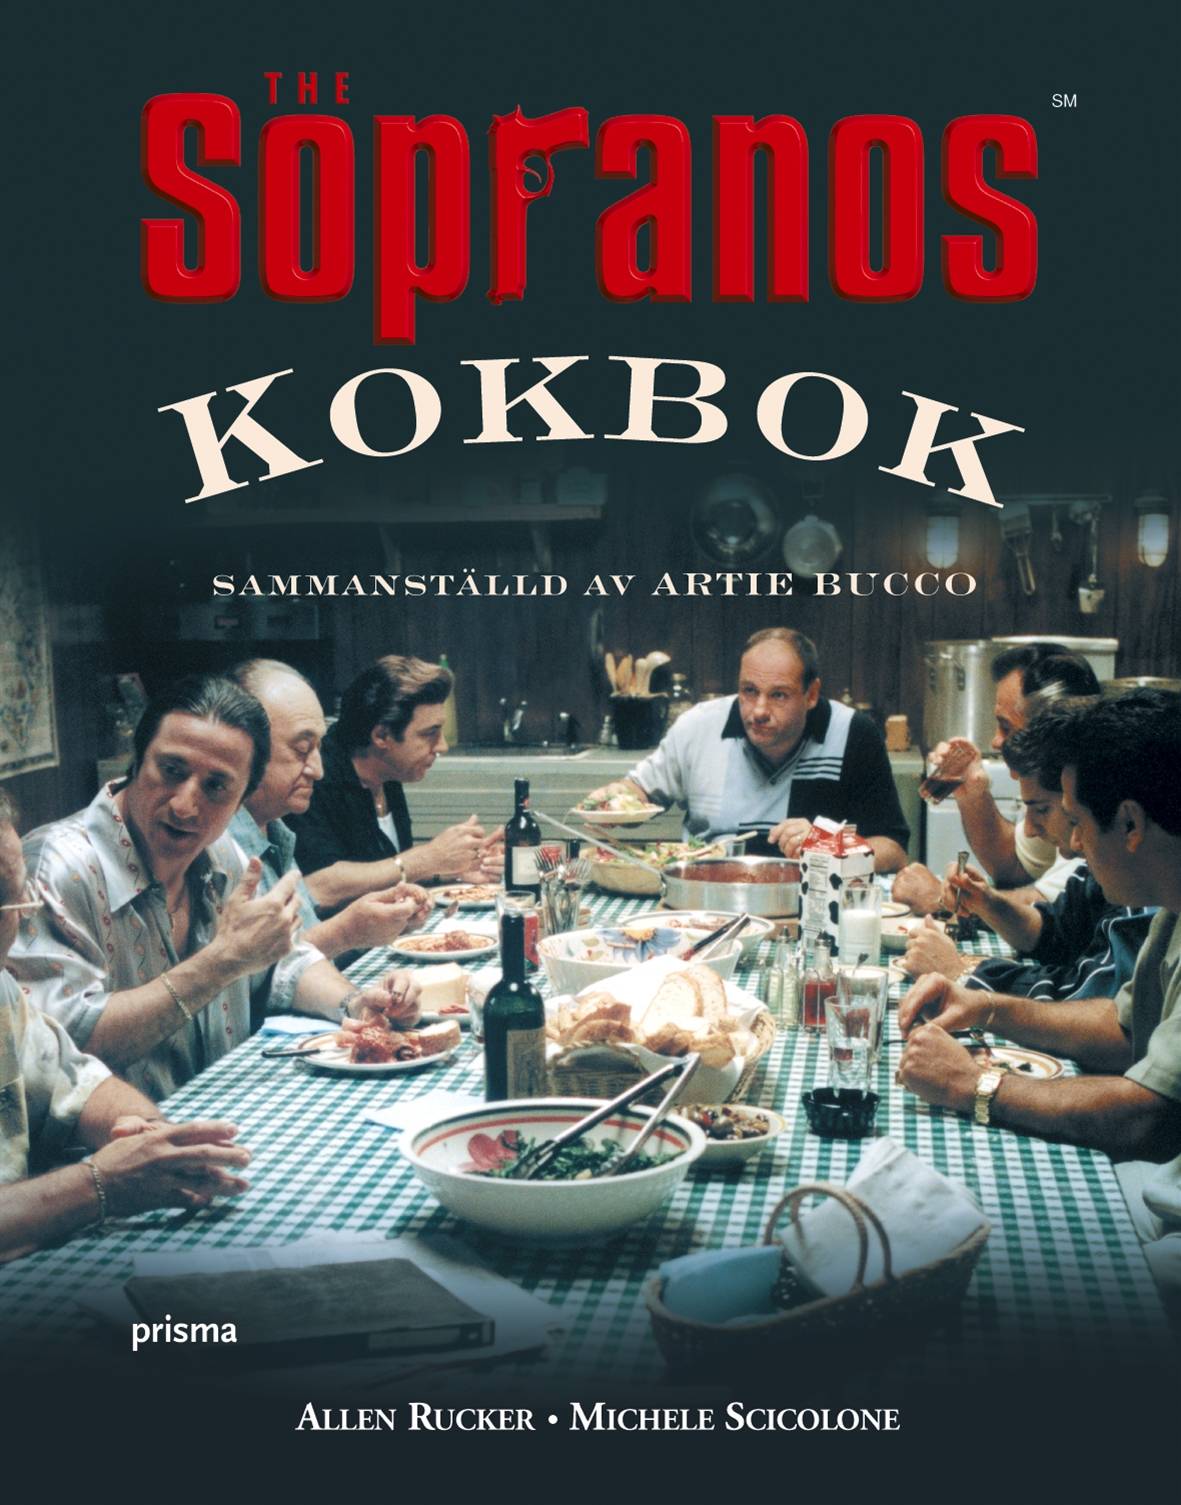 Sopranos kokbok : Sammanställd av Artie Bucco